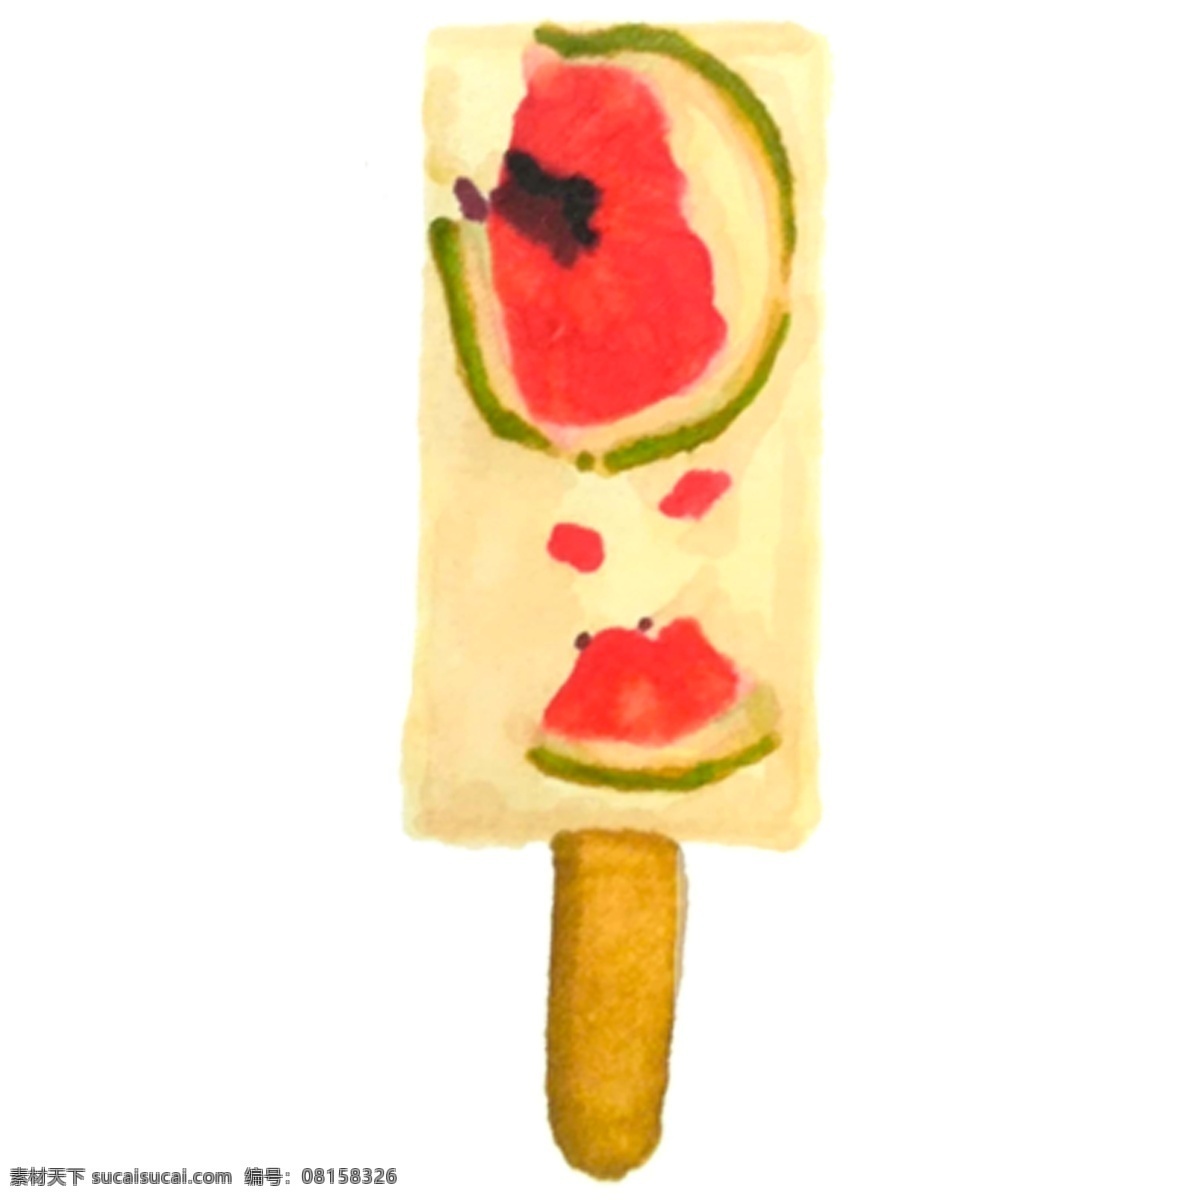 卡通 西瓜 冰棒 免 抠 图 西瓜冰棒 冷饮 零度冰柜 冰箱里的冰柜 夏日解署 卡通冰棒 美味冰棒